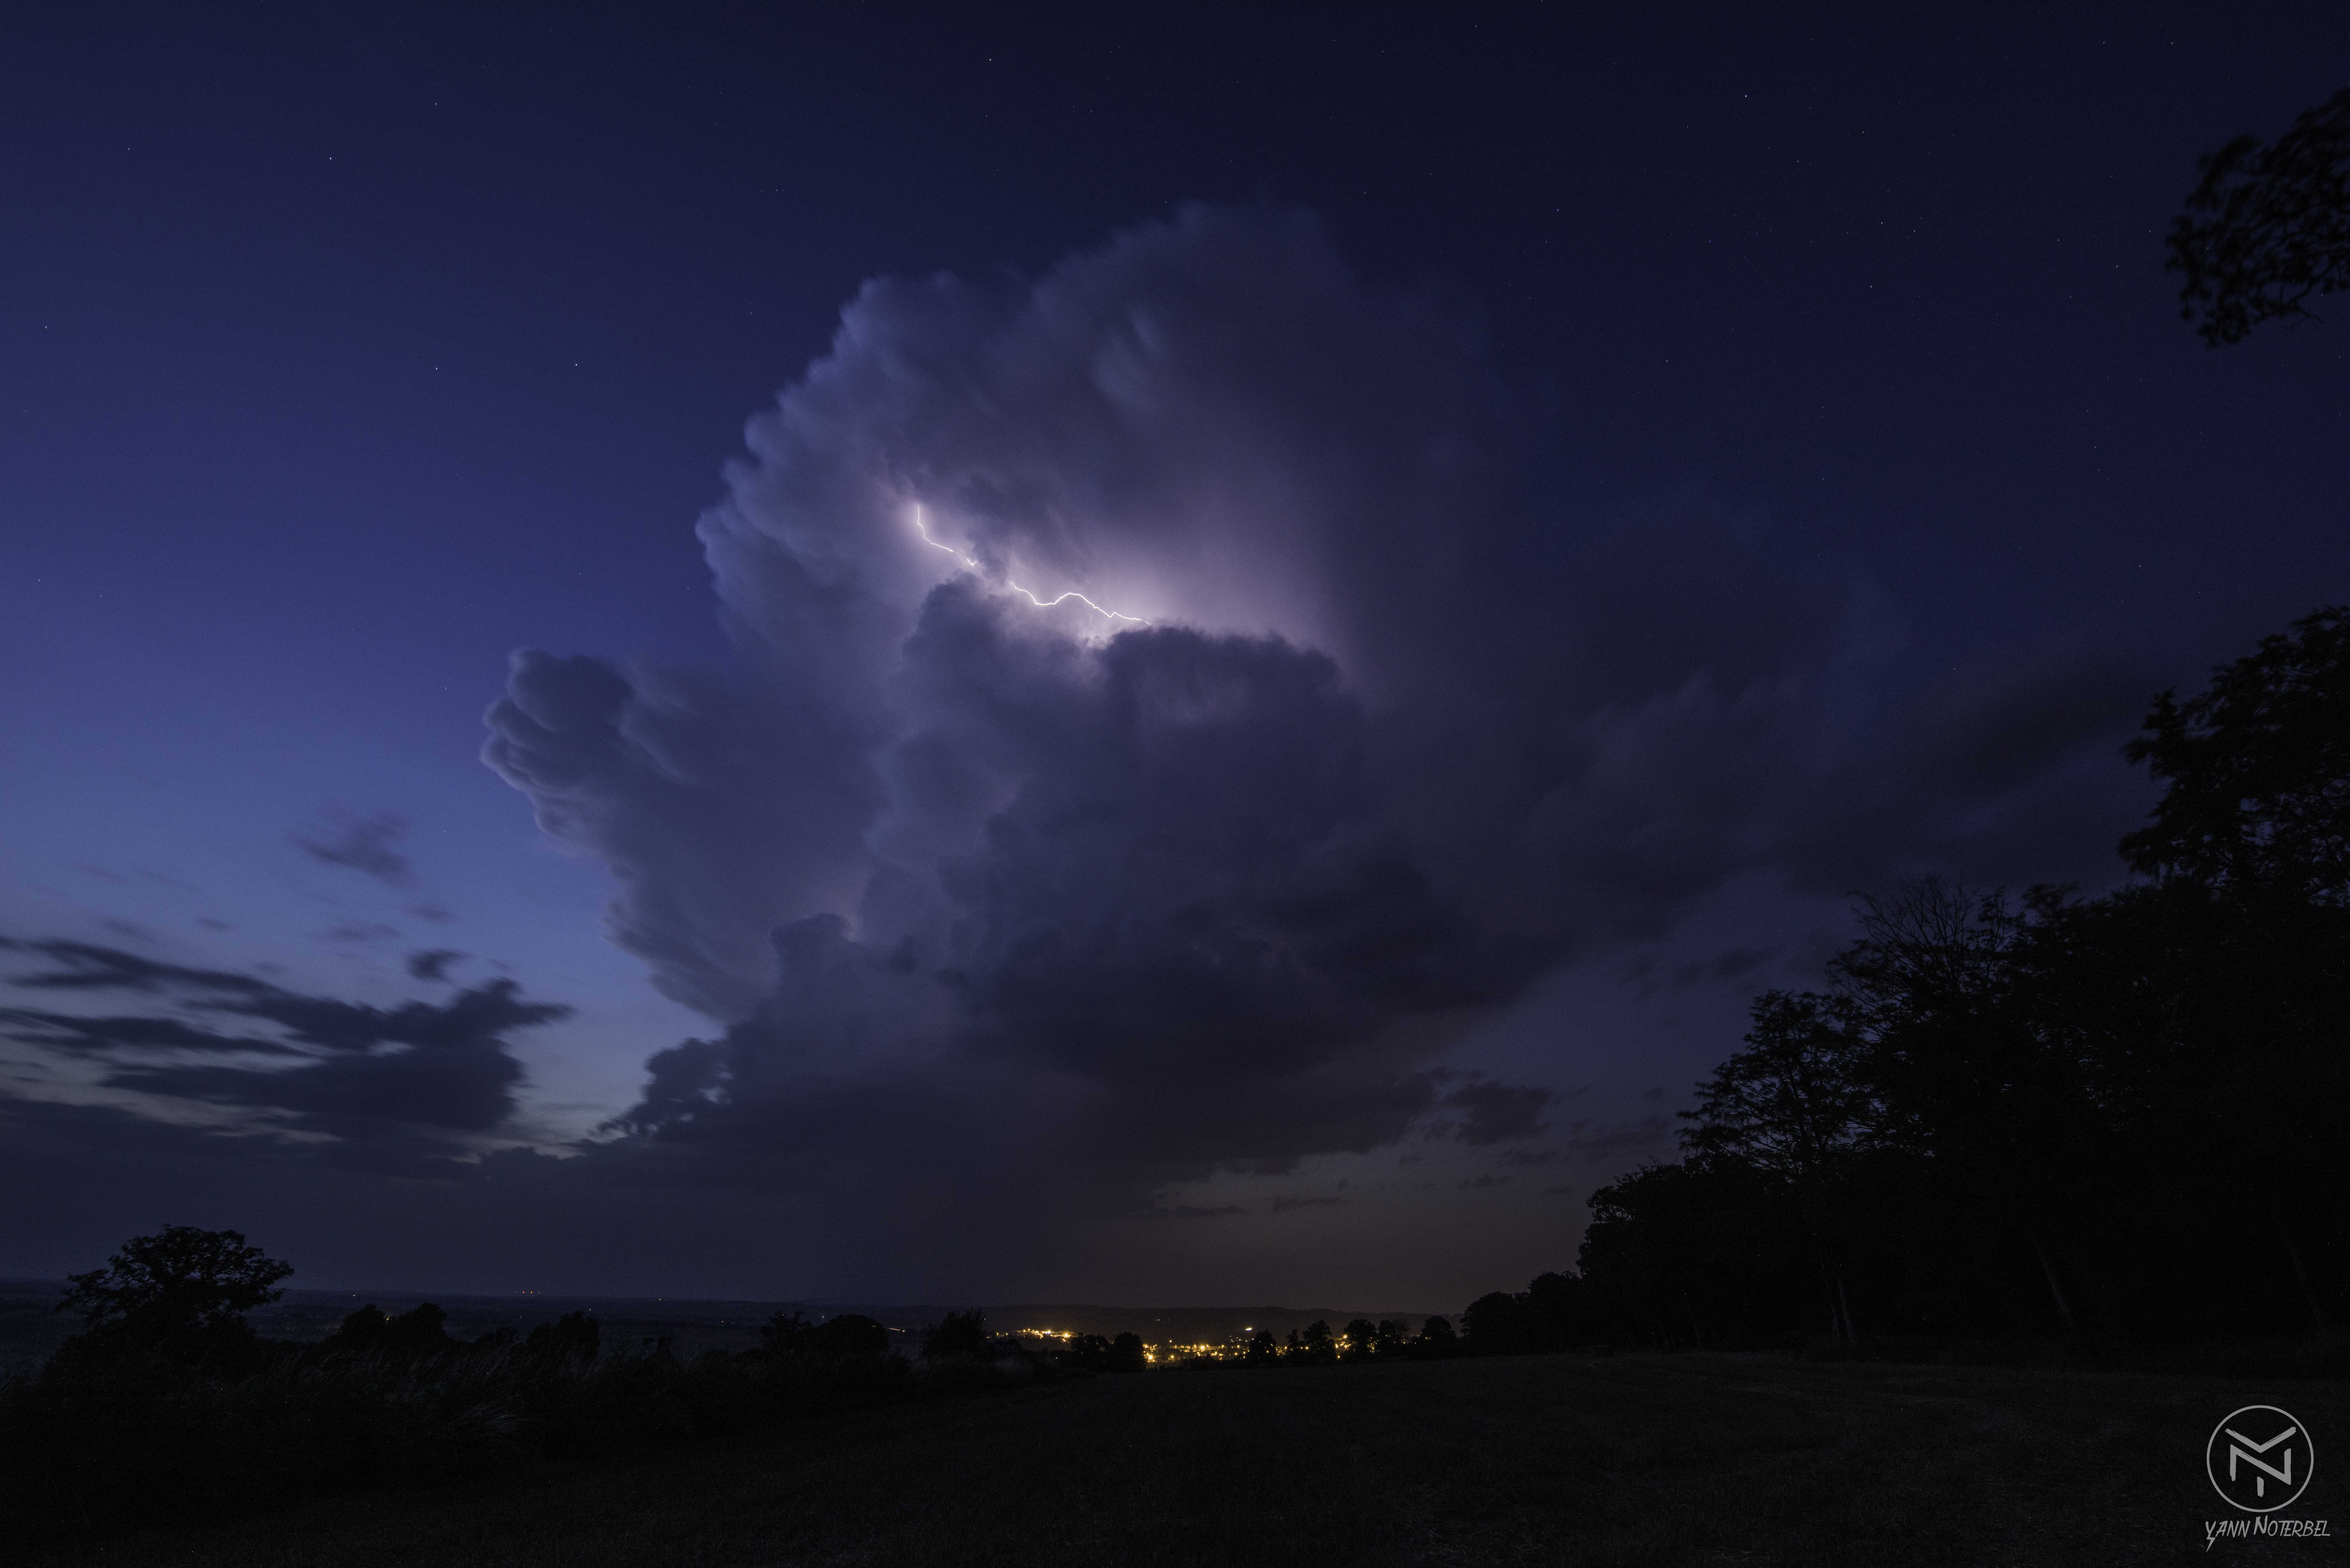 Orage sur la plaine du calvados ( Cumulonimbus Capillatus incus). Beaucoup d'activité electrique intra nuageuse - 23/07/2019 22:30 - yann Noterbel